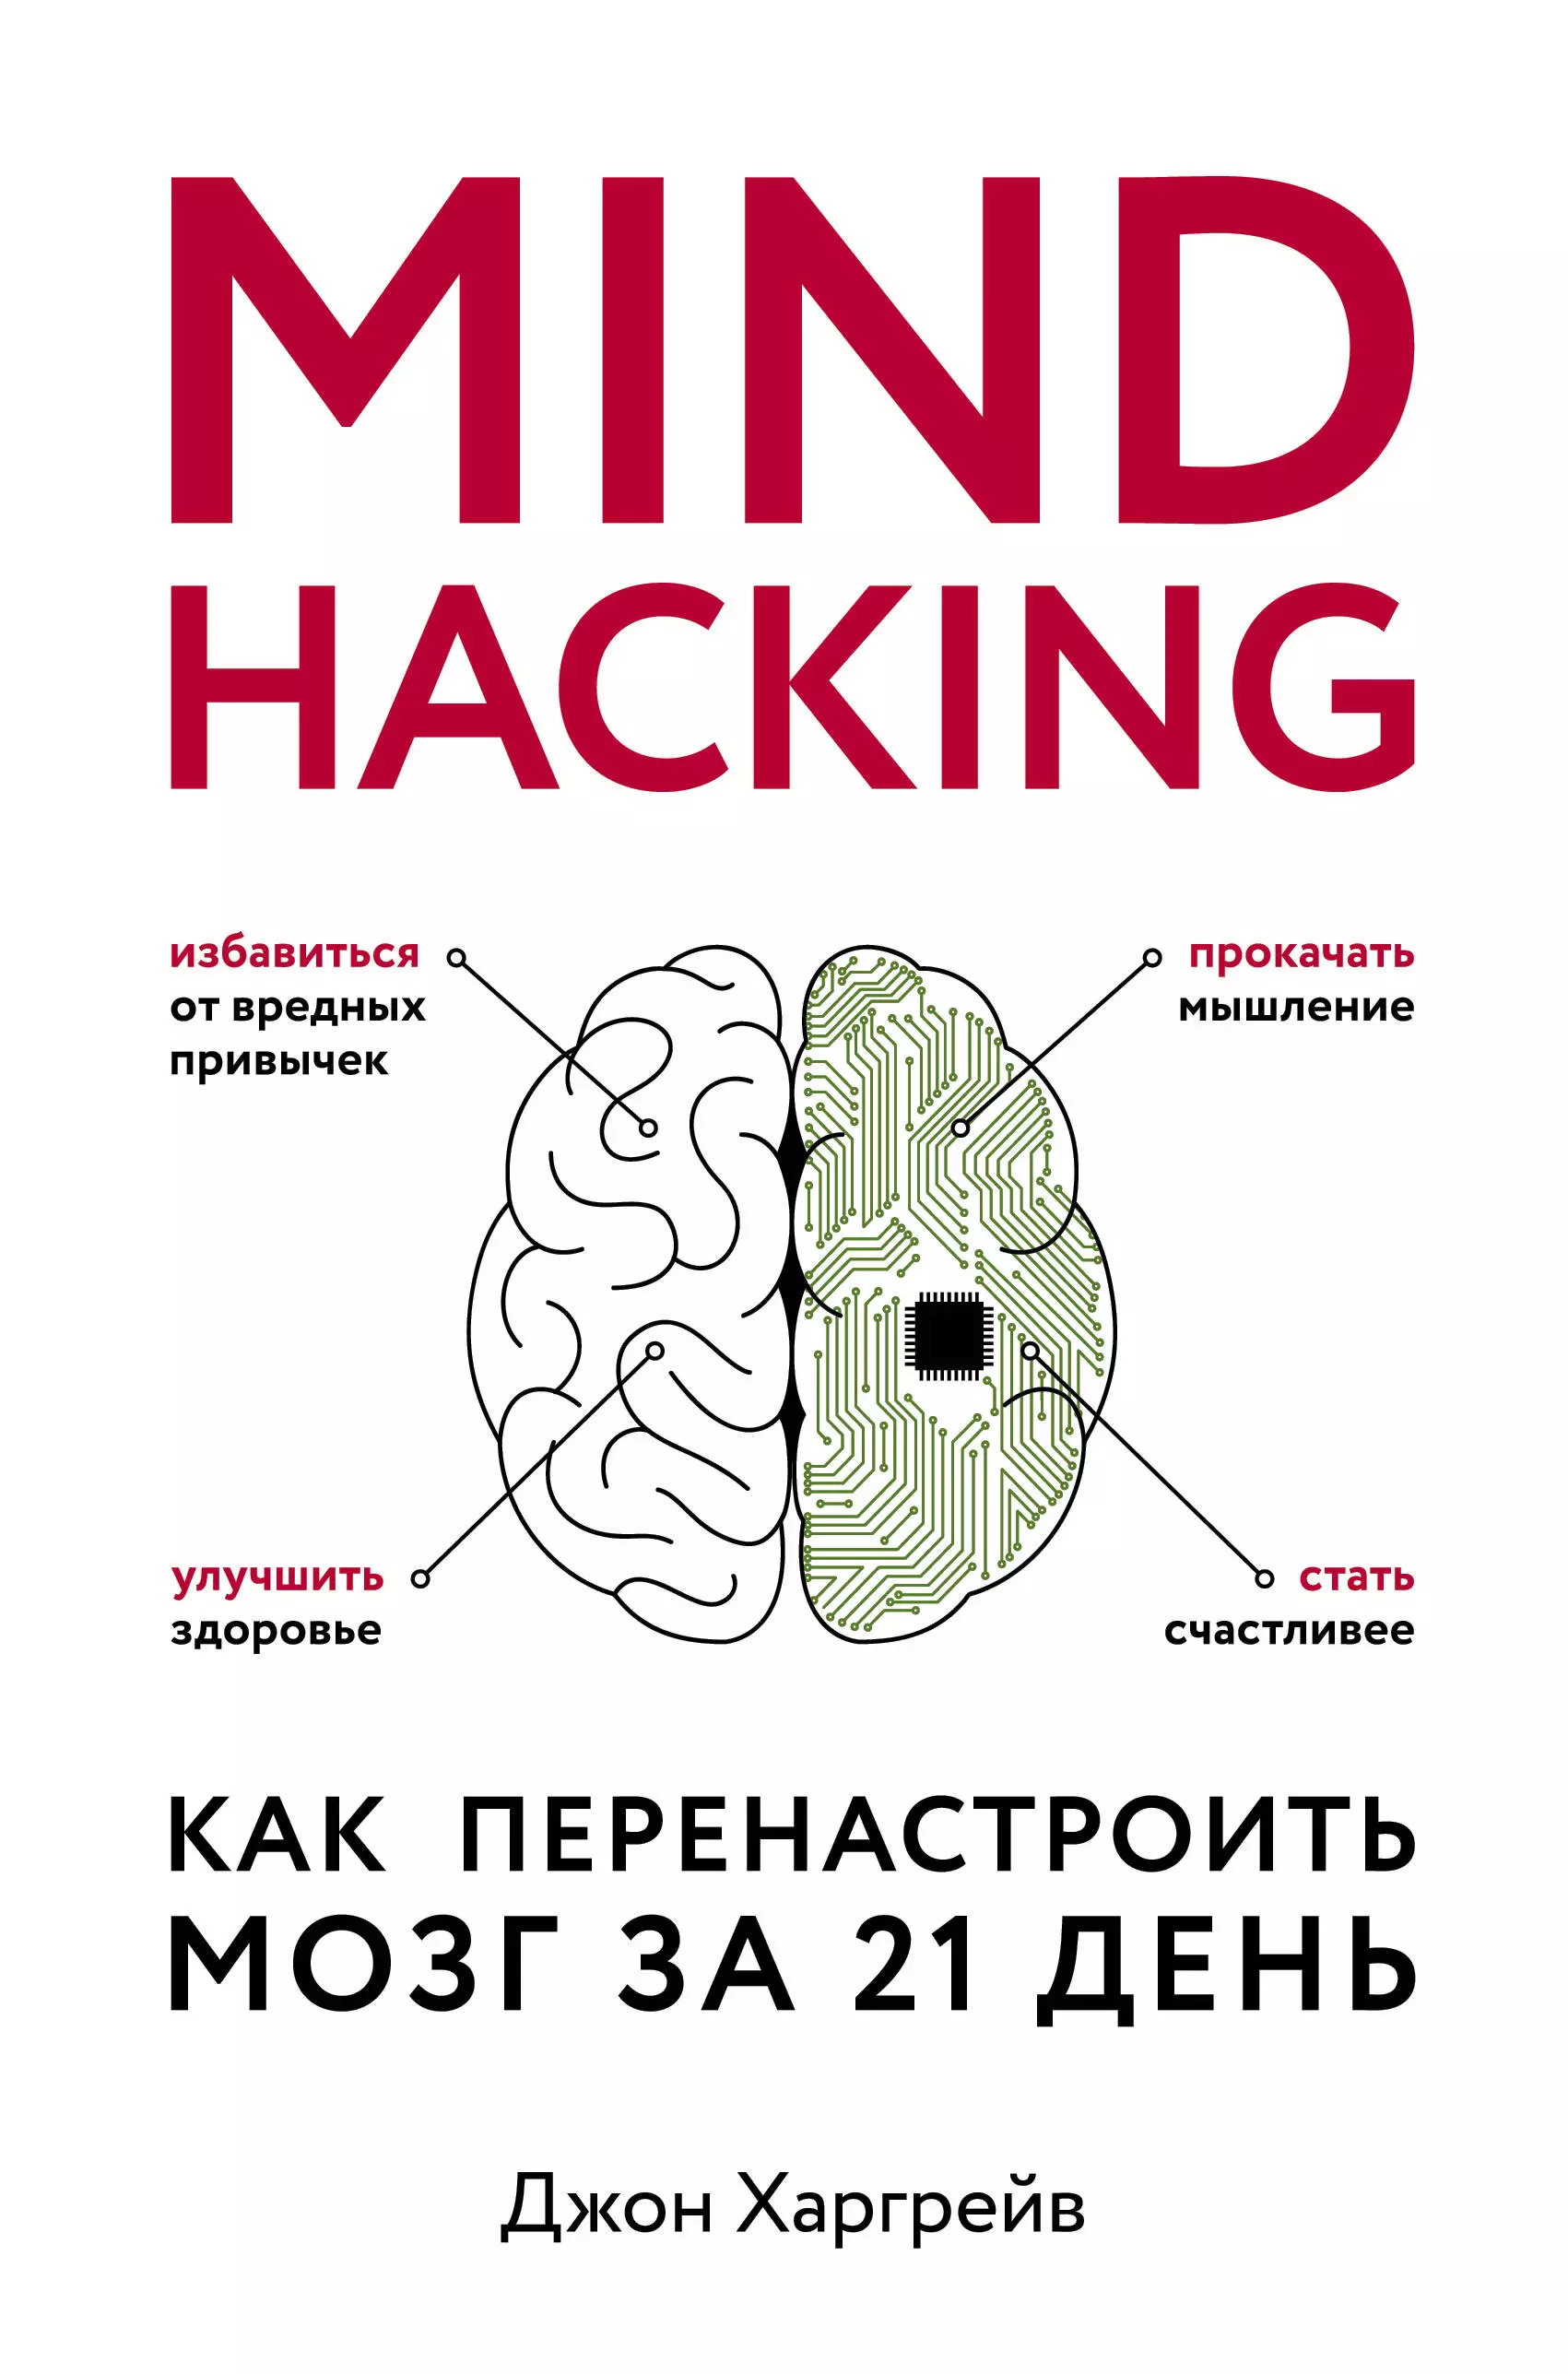 Новикова Татьяна Олеговна, - Mind hacking. Как перенастроить мозг за 21 день